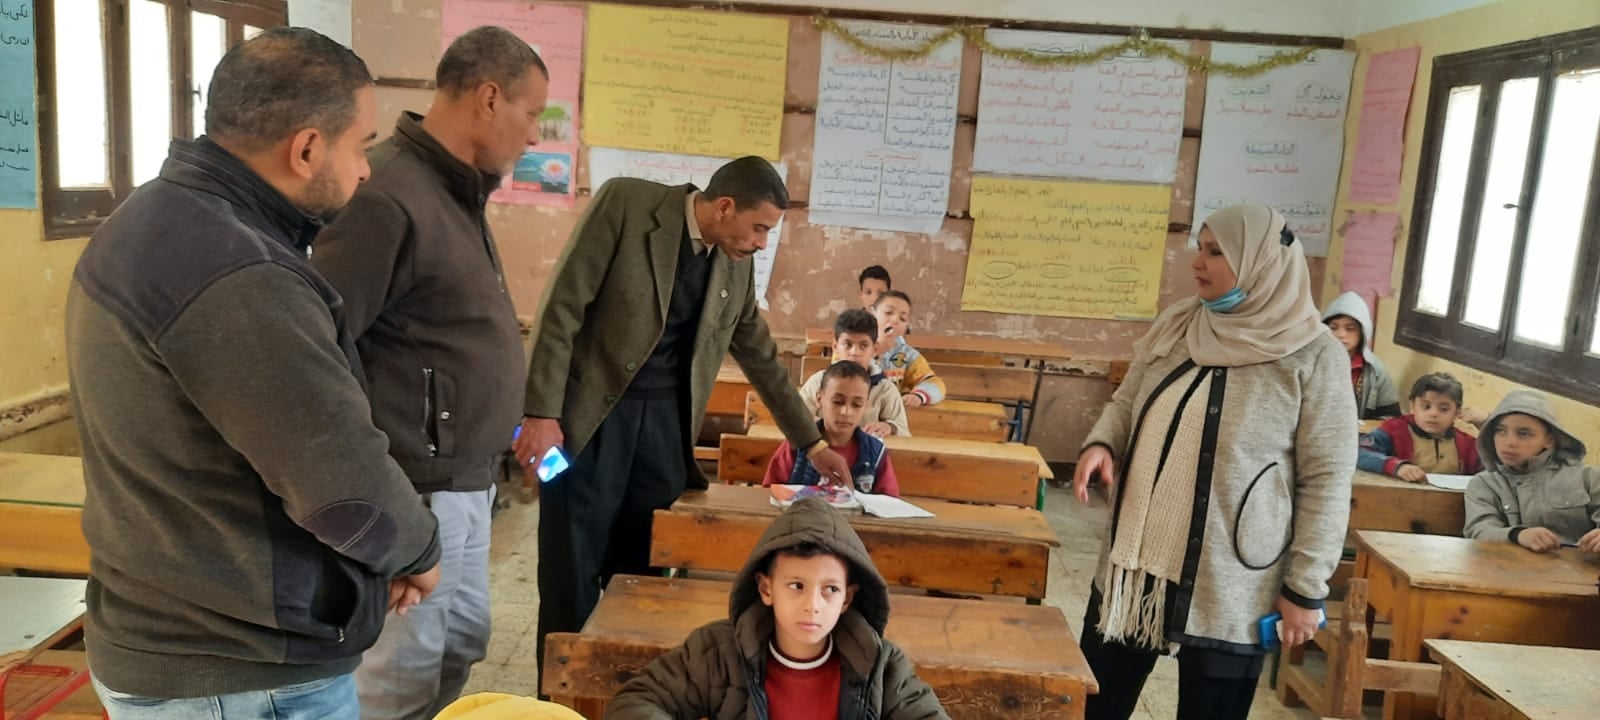 طارق شوقي: وضع خطة لاكتشاف الموهوبين بمدارس قرى "حياة كريمة"